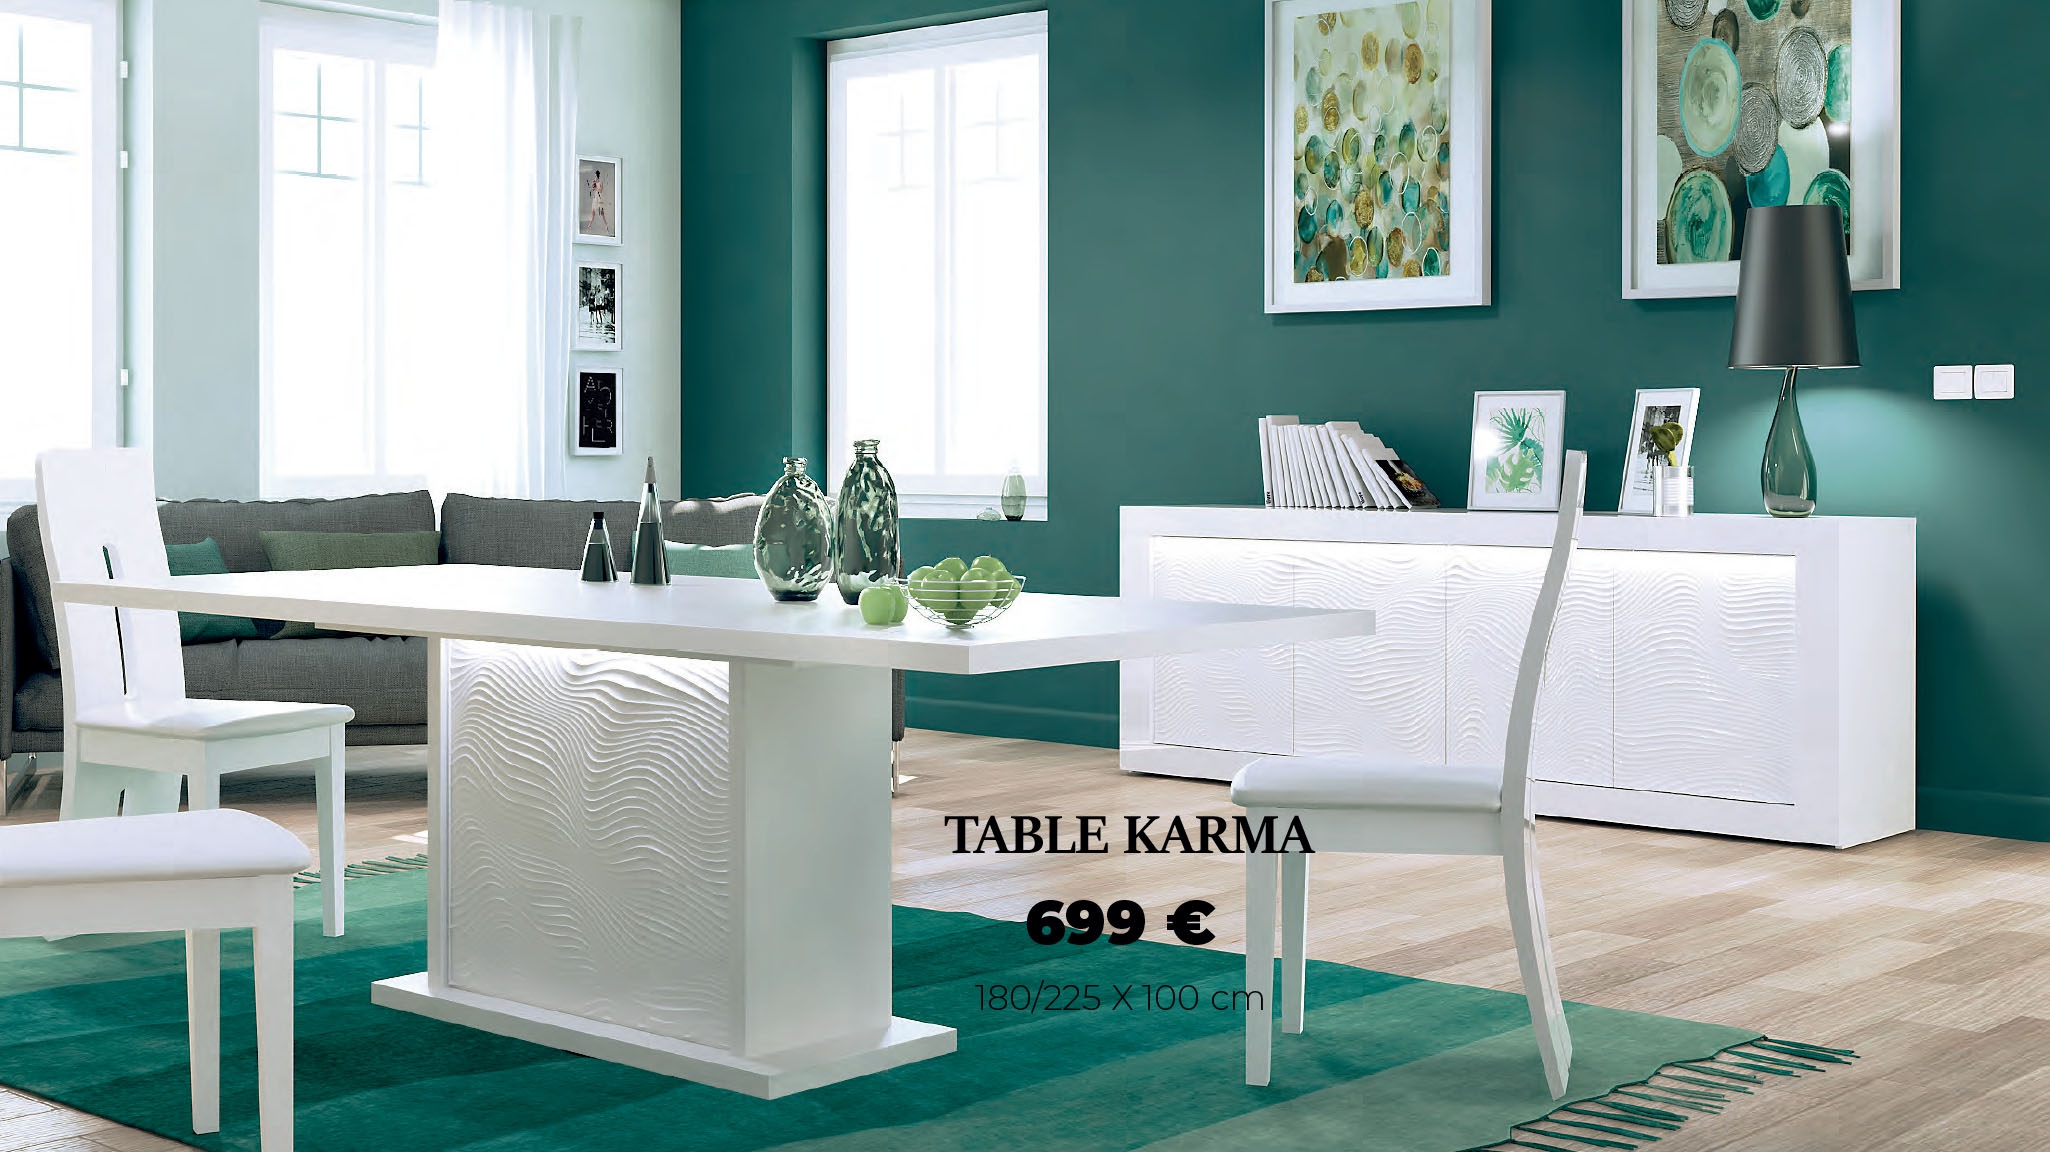 TABLE KARMA 180/225 x 100 cm